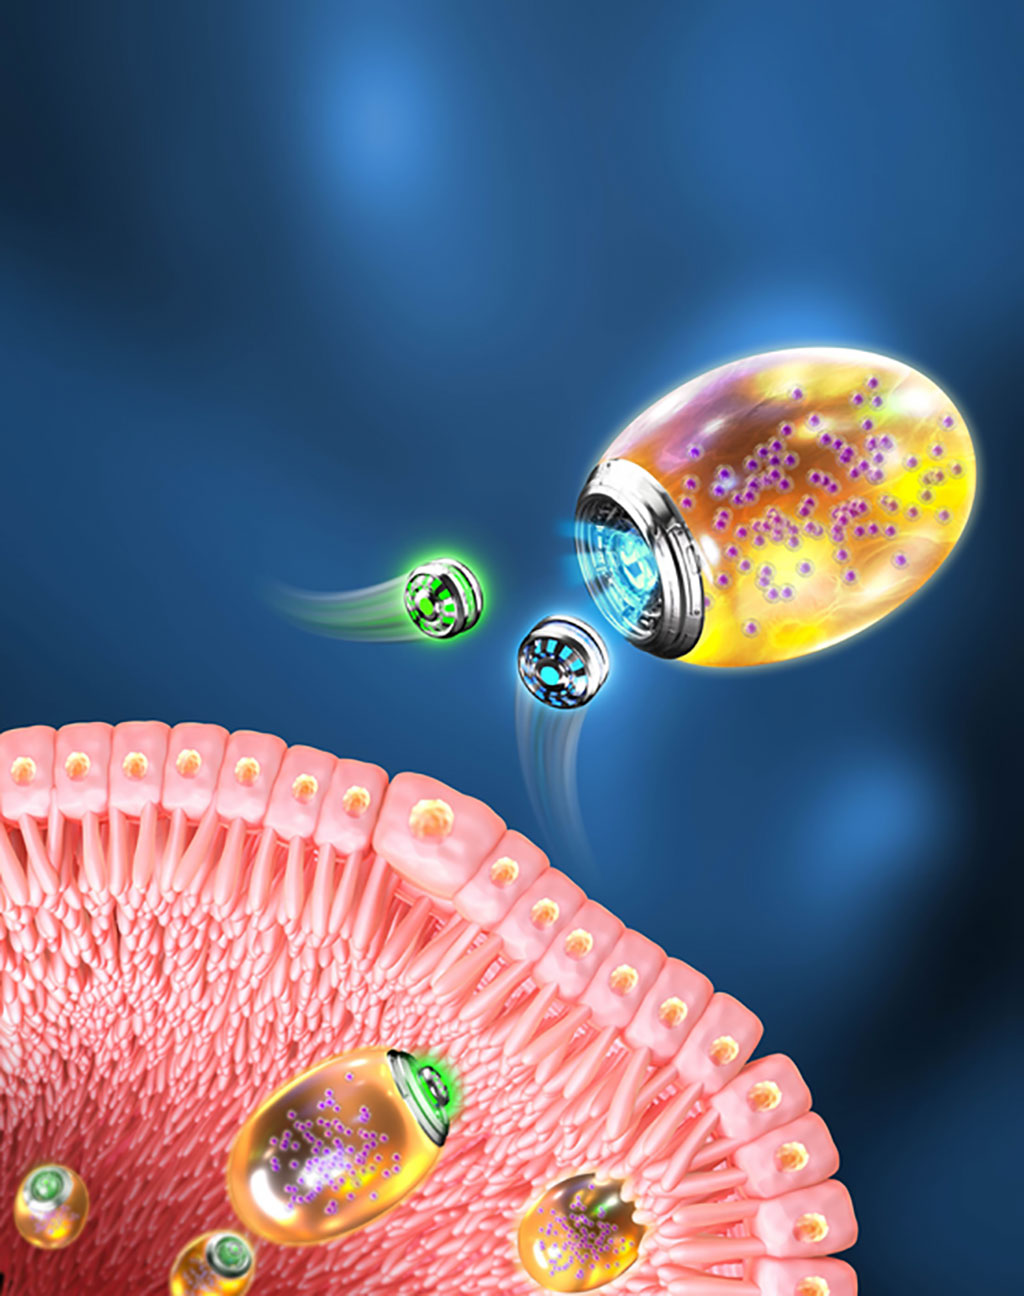 Imagen: Micro/nanorobots autoadaptativos de de doble biomotor desarrollado para la terapia para la inflamación gastrointestinal (Fotografía cortesía de SIAT)